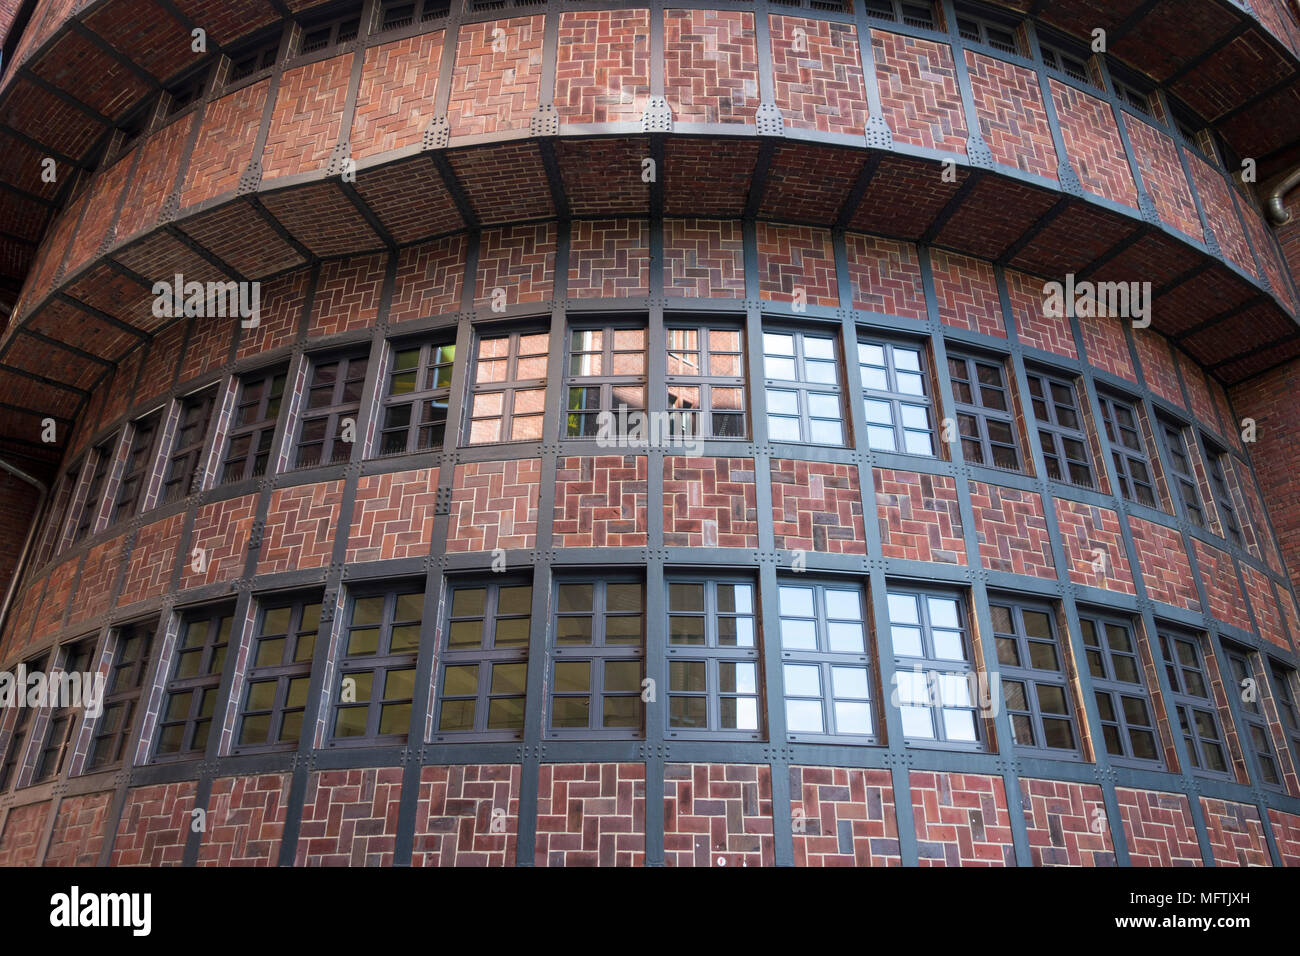 Arquitectura industrial fotografías e imágenes de alta resolución - Alamy